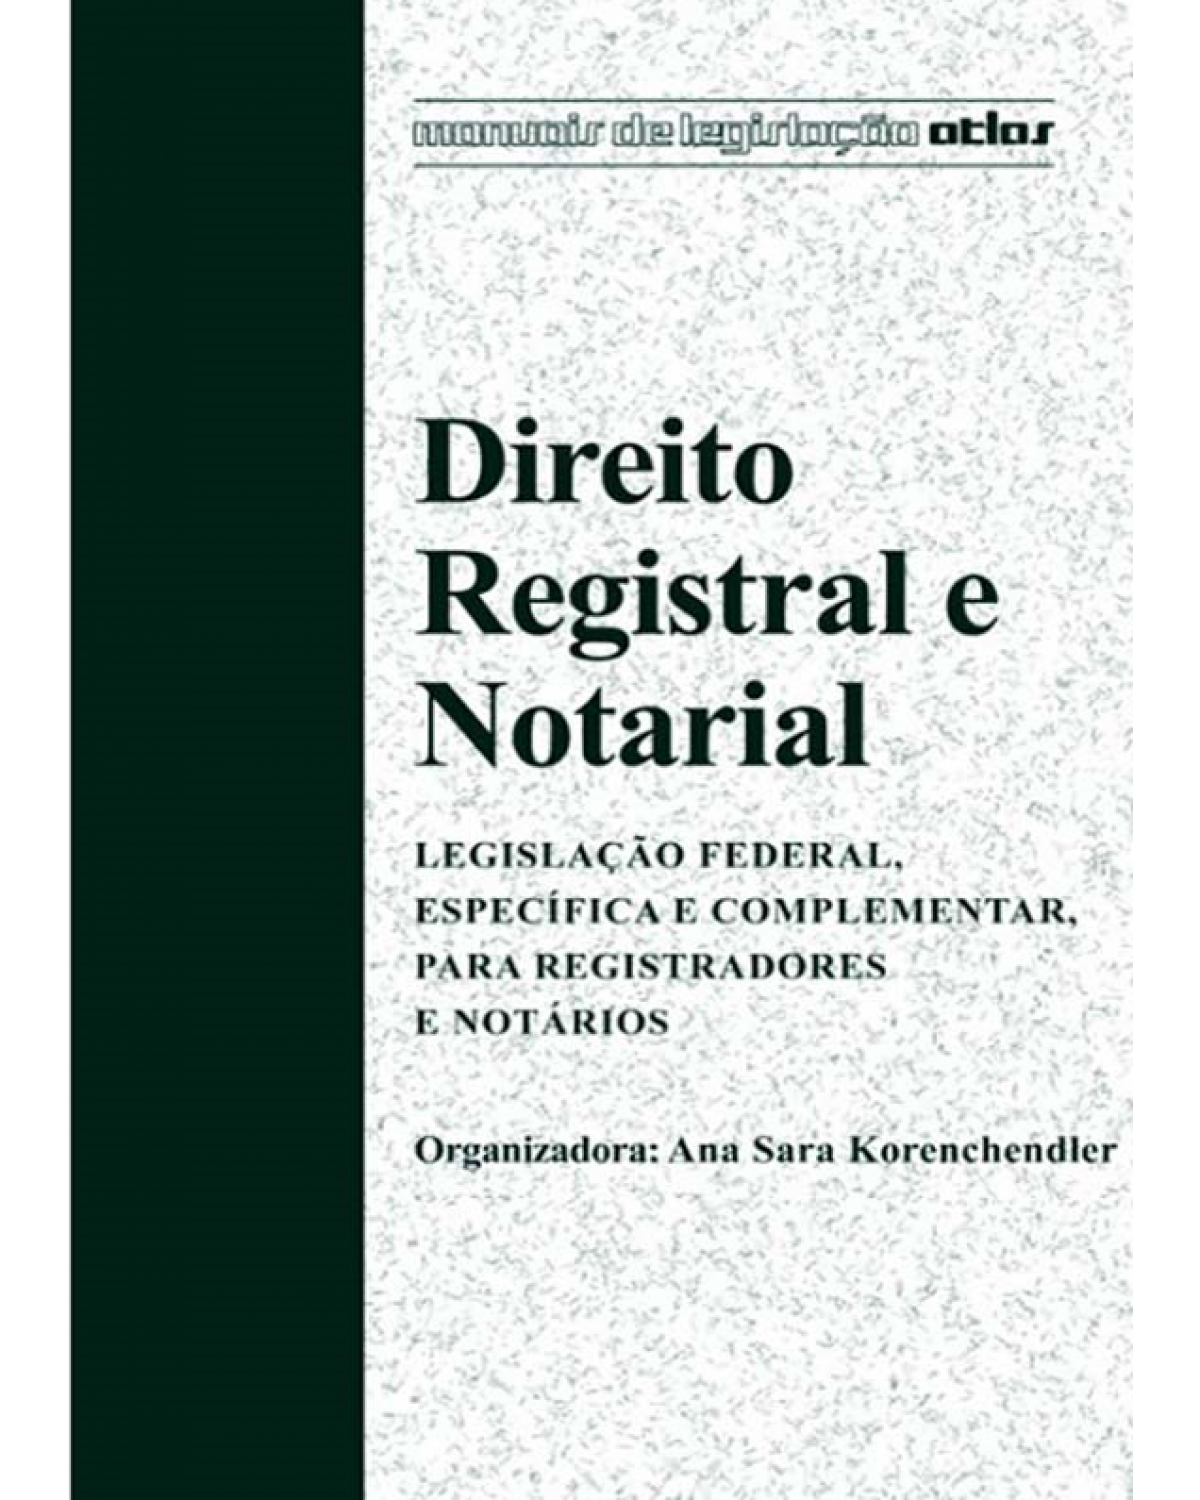 Direito registral e notarial - Legislação federal, específica e complementar para registradores e notários - 1ª Edição | 2014